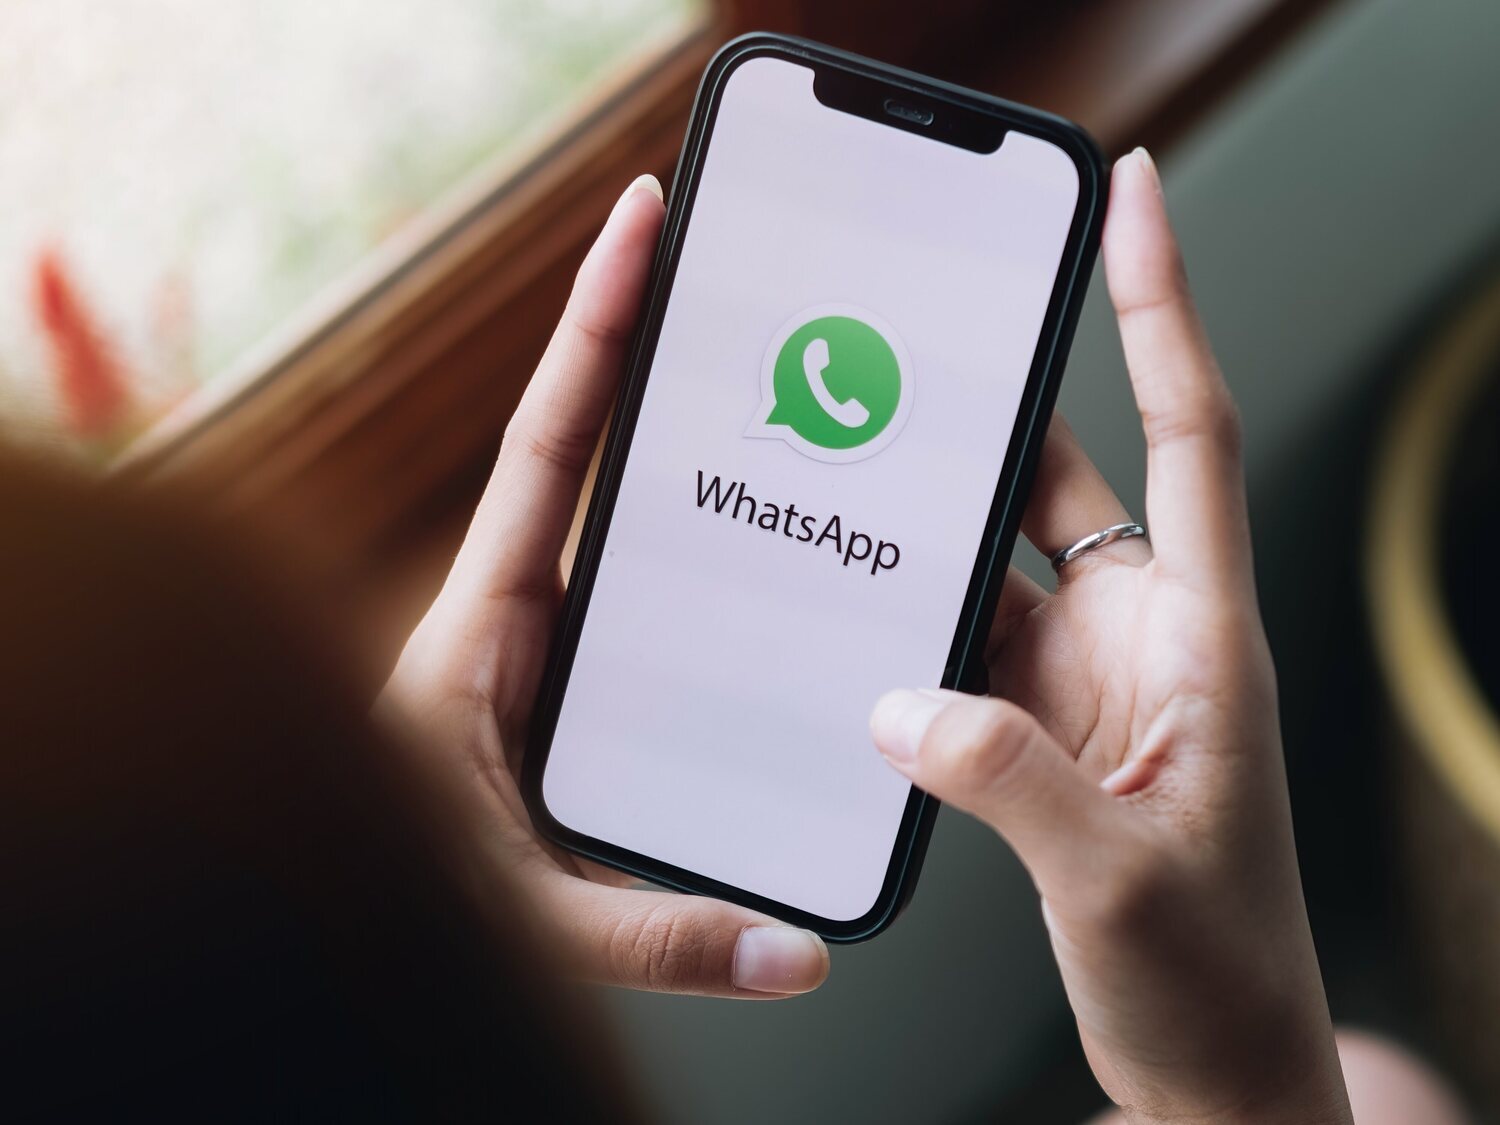 WhatsApp sufre una caída a nivel mundial: un problema con los servidores impide el envío de mensajes